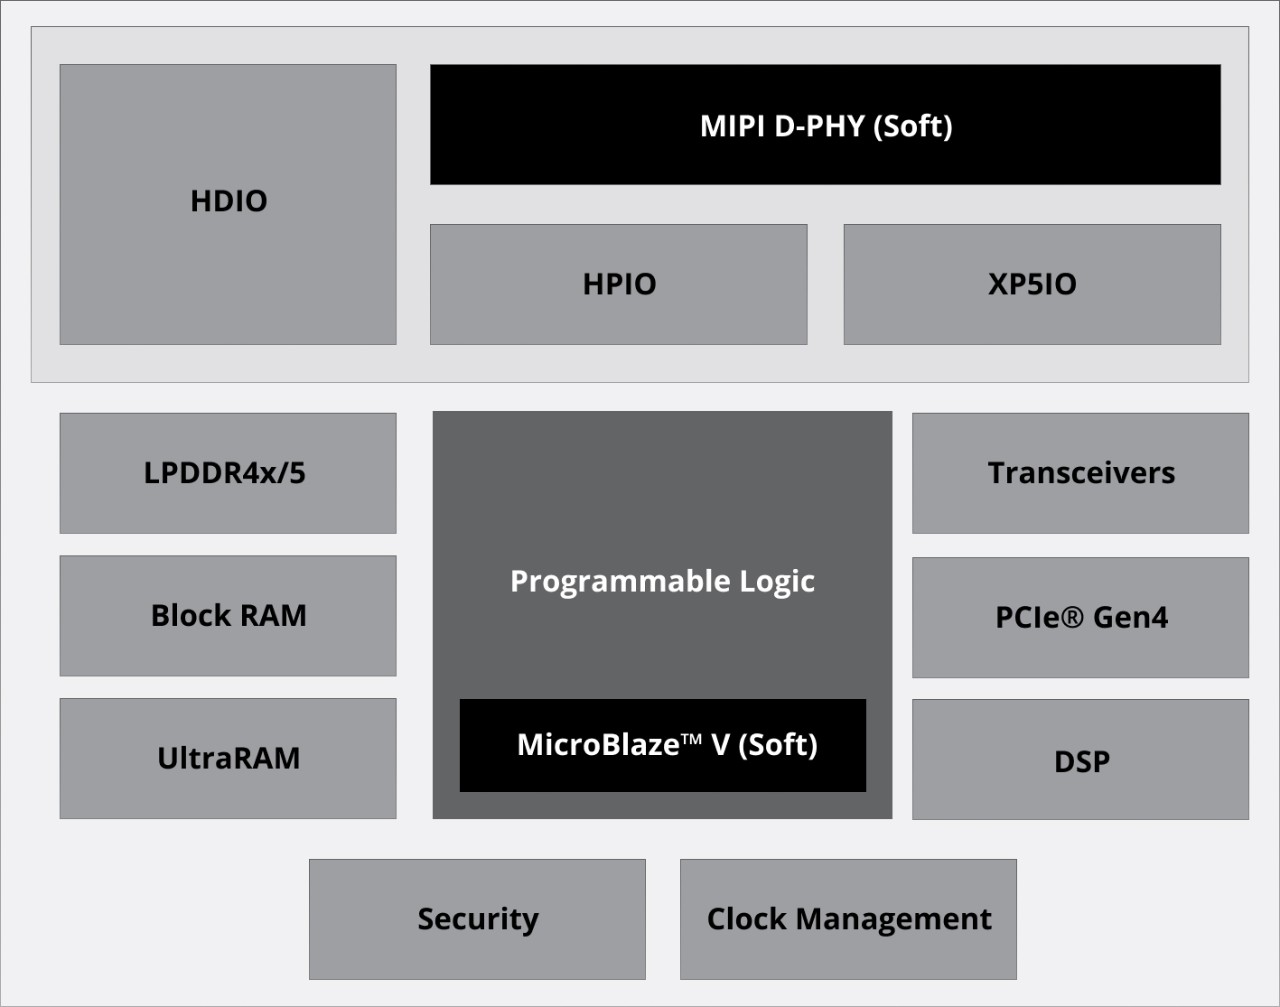 AMD Spartan UltraScale+ FPGA は、3 種類の I/O を組み合わせた包括的な I/O 機能を提供しています。最大 3.3V まで対応できる HDIO (High-Density I/O) と最大 1.8V まで対応できる HPIO (High-Performance I/O) は 2500 Mb/s MIPI および 1600 Mb/s LVDS をサポートしています。最大 1.5V まで対応できる XP5IO は、3200 Mb/s MIPI および 1800 Mb/s LVDS をサポートしています。また、異なる種類のオンチップ メモリを備えており、低レイテンシ高スループットのブロック RAM と大容量オンチップ メモリの UltraRAM を使用できます。その他、ハード メモリ コントローラー (最大転送速度 4266 Mb/s) および DDR4 ソフト メモリ コントローラー IP (最大転送速度 2400 Mb/s) を使用して外部メモリ LPDDR4x/LPDDR5 を組み合わせることが可能です。高性能トランシーバーが必要なアプリケーション向けに、Spartan UltraScale+ FPGA は最大 16.3 Gb/s まで対応できる GTH トランシーバーと単一オシレーターを備えています。また、SerDes 機能も統合されているため、PCIe Gen4 x8 に対応できる上に追加のクロッキング コンポーネントが不要になります。セキュリティ機能として、eFuse バイト ストライピングを使用した AES-GCM 復号化がサポートされており、迅速なコンフィギュレーションが確保されます。すべてのデバイスは、堅牢で信頼性の高い暗号化に不可欠となる PUF (物理複製困難関数) と TRNG (真性乱数生成器) によって一意に識別されます。